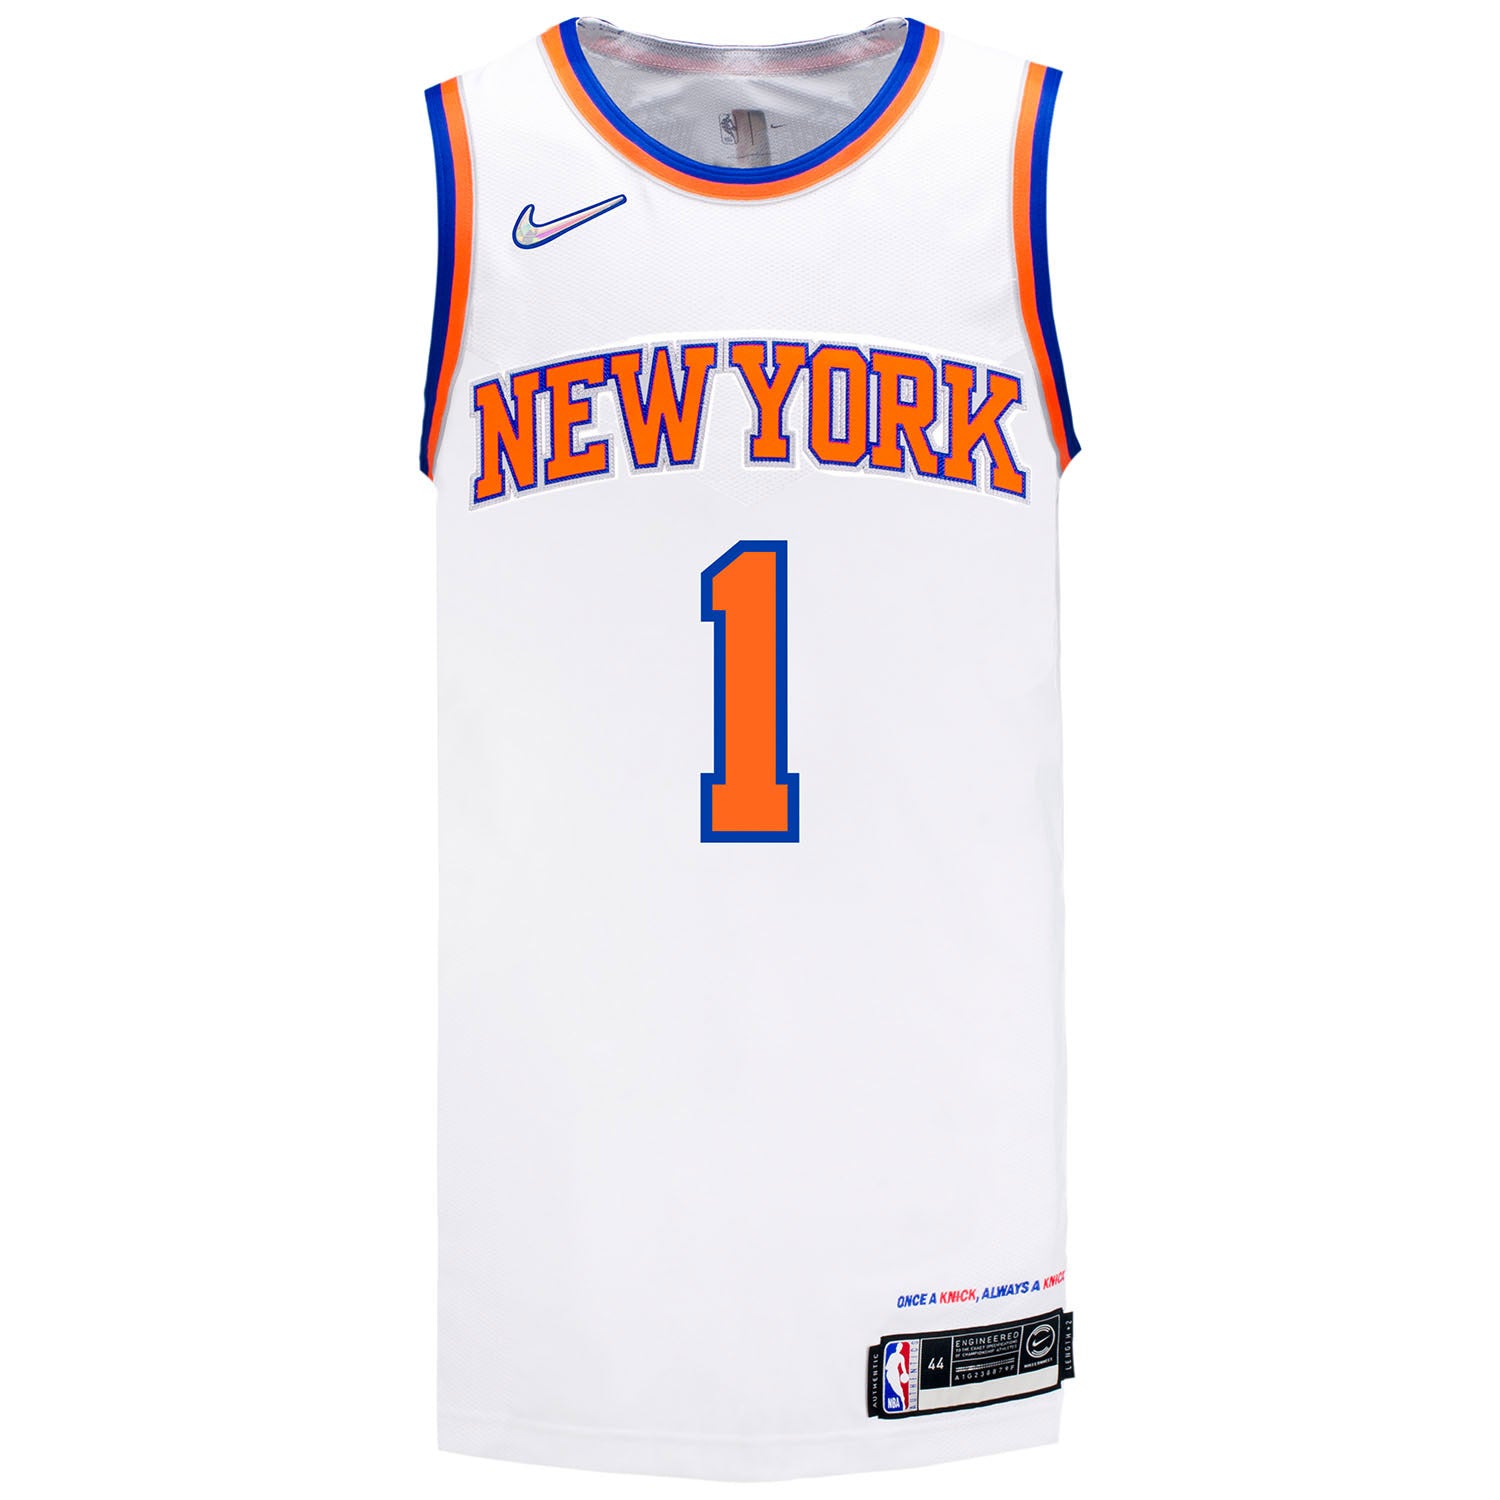 Obi Toppin Signed Knicks Jersey (USA SM)